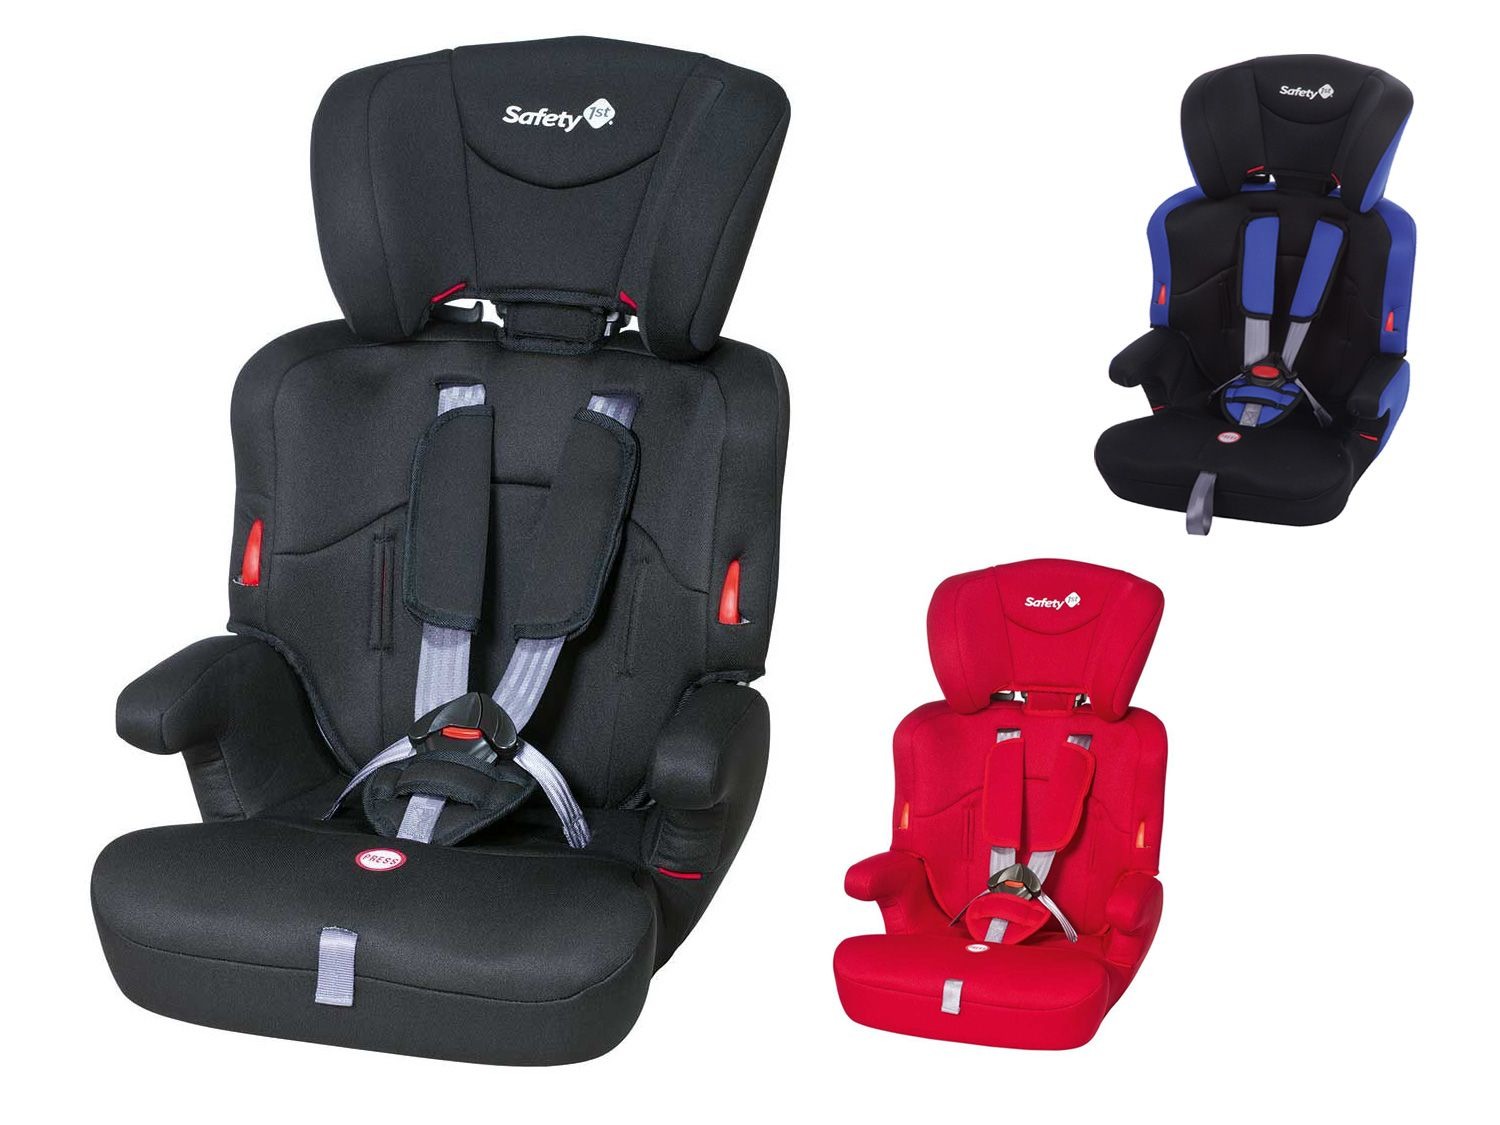 1st Kinder autostoel Ever Safe | LIDL